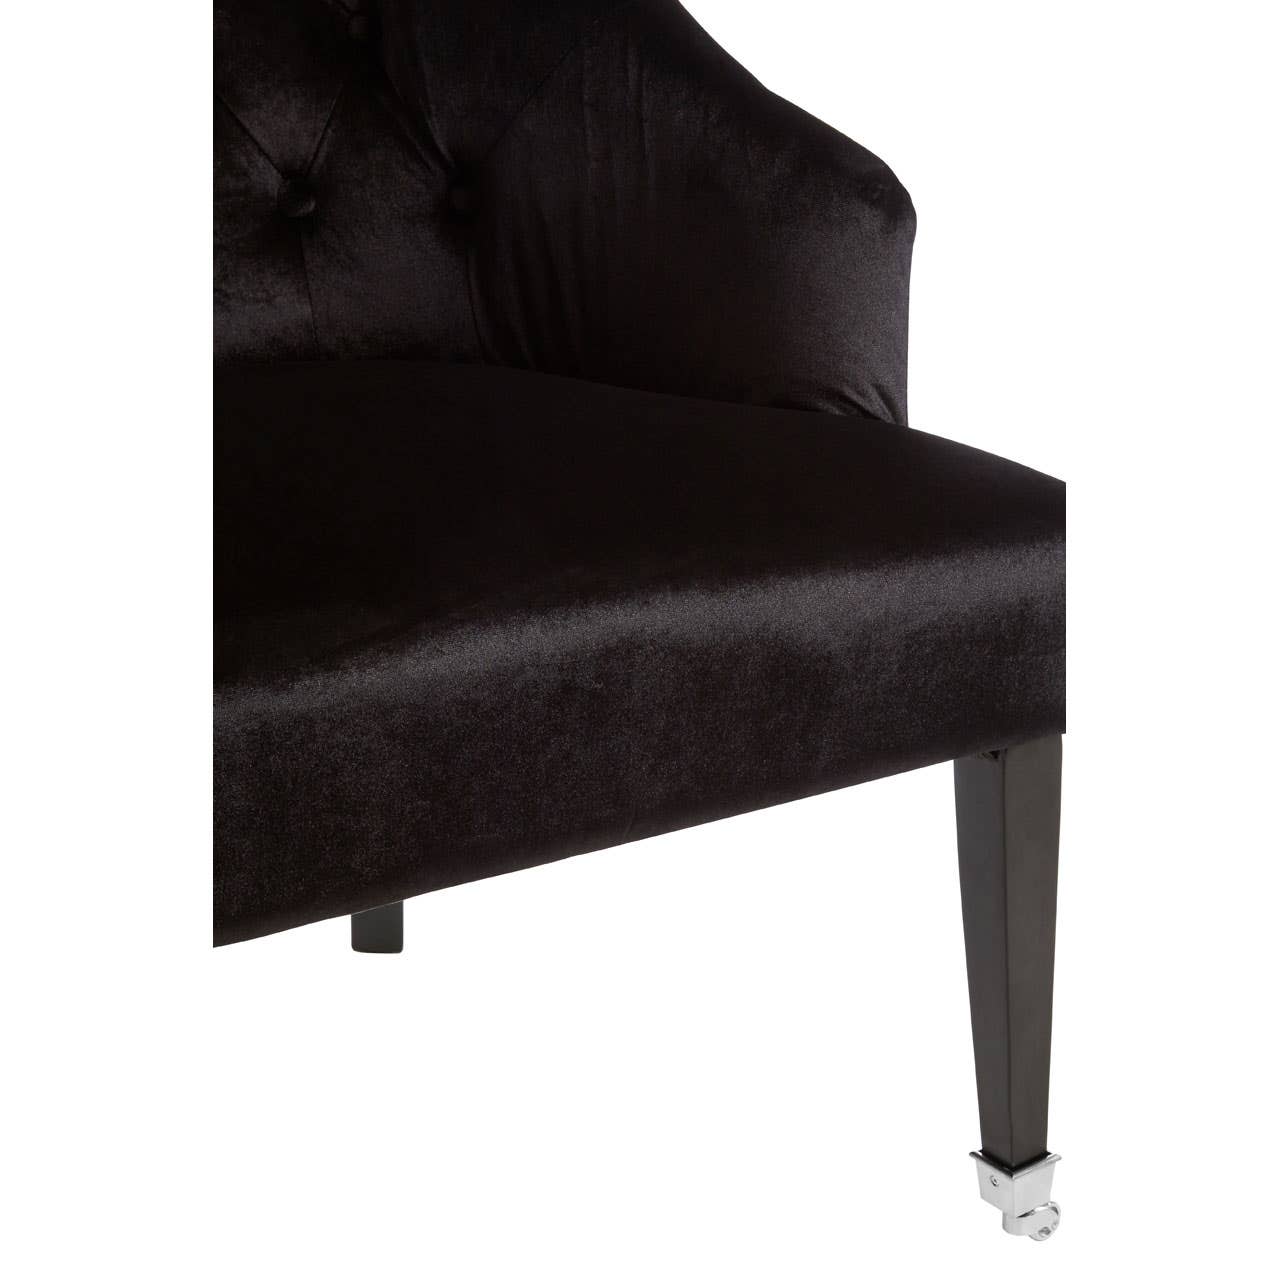 Noosa & Co. Living Darwin Black Velvet Chair House of Isabella UK